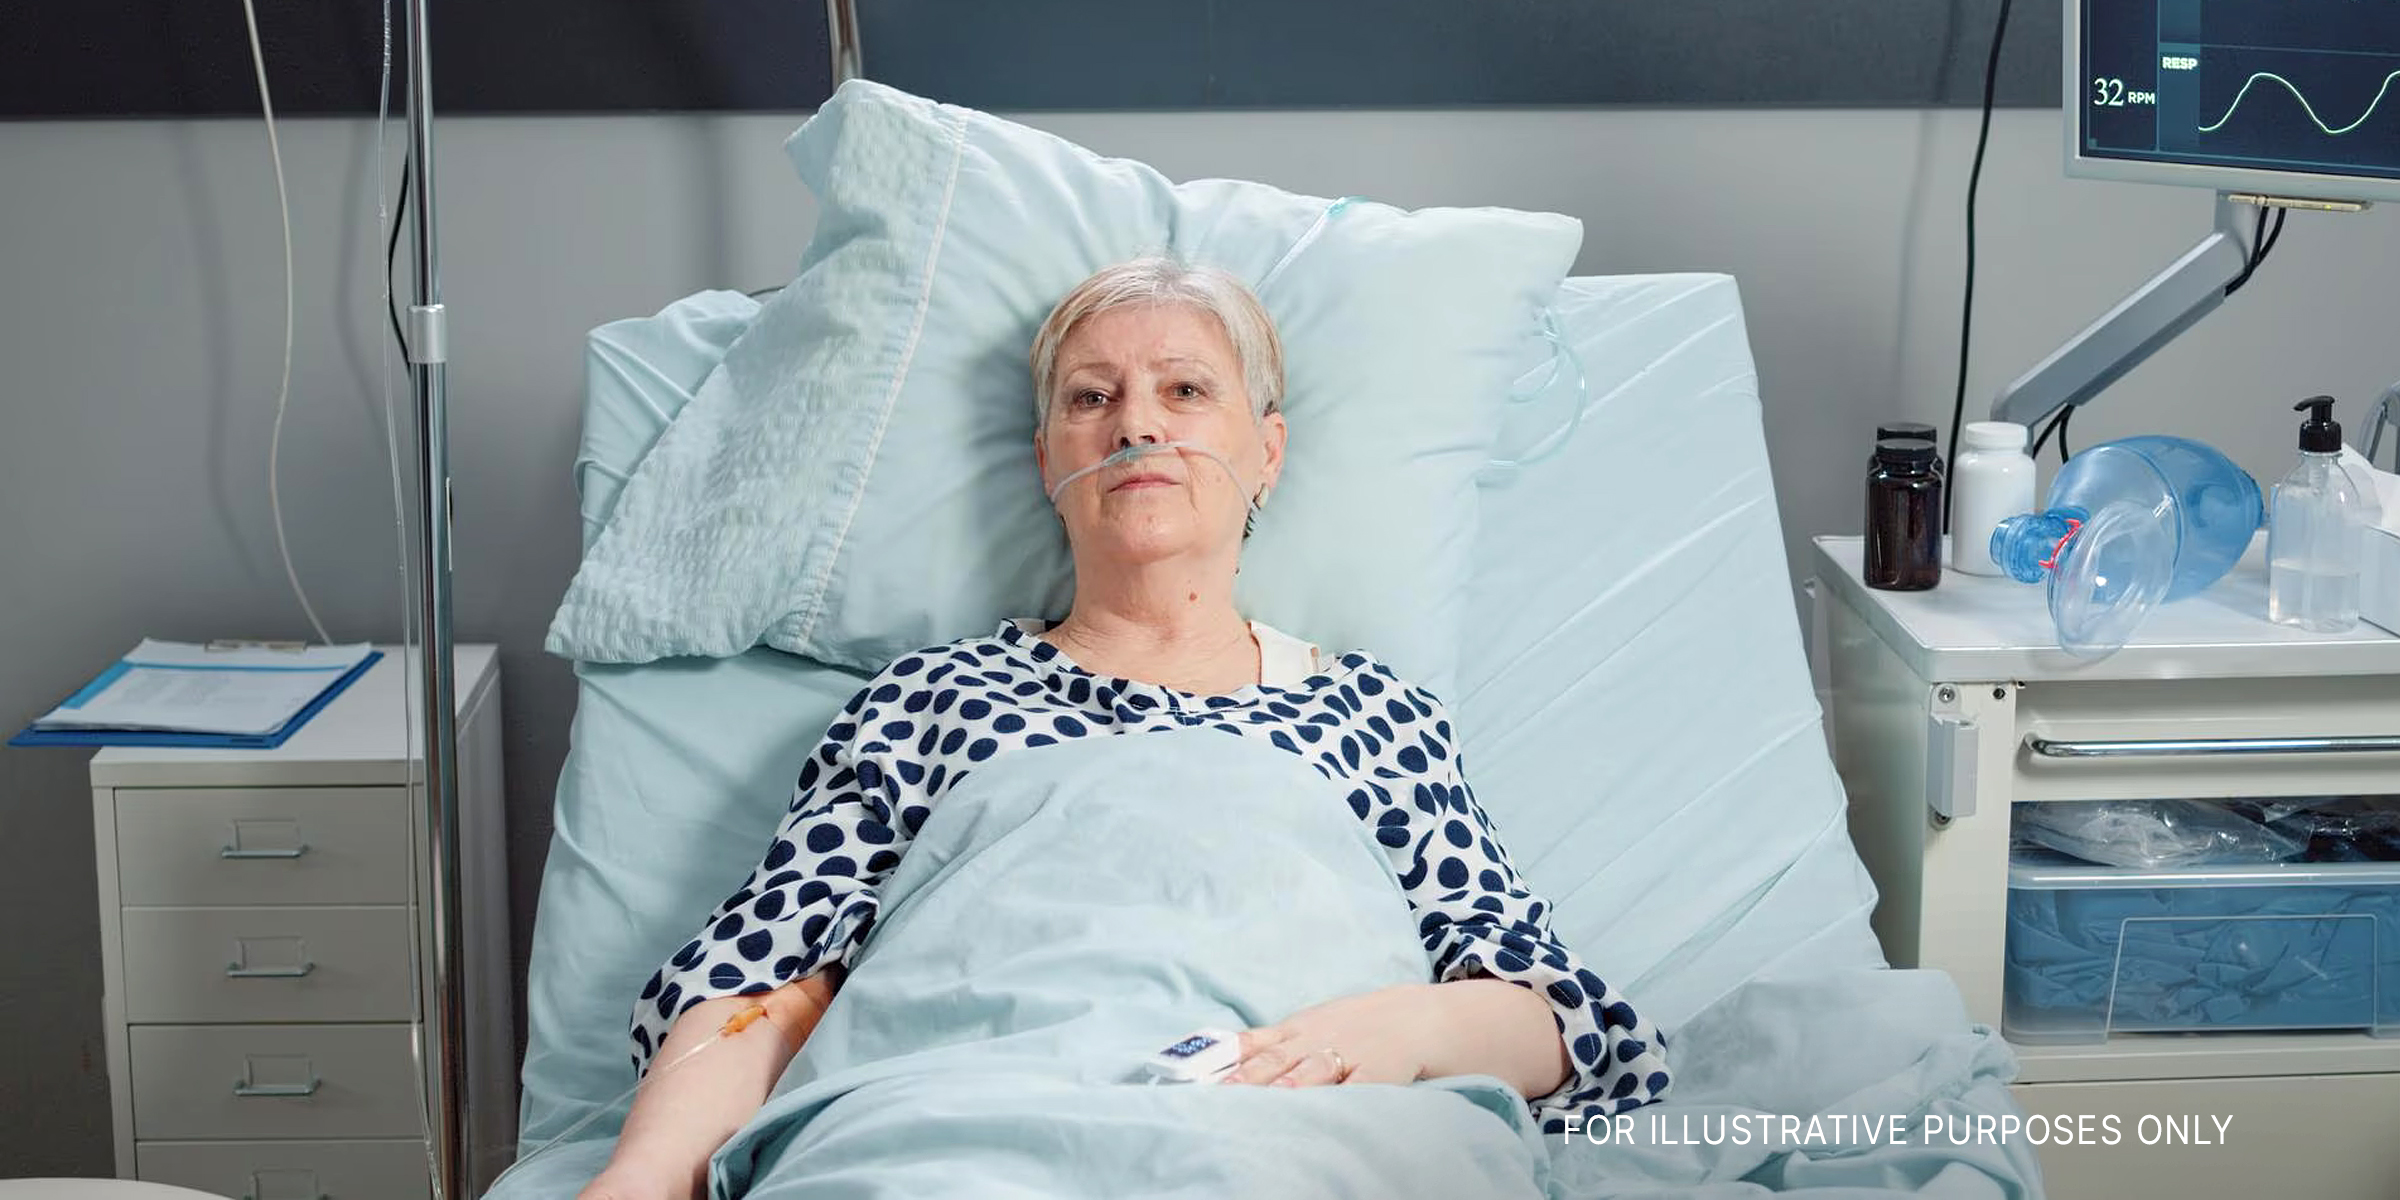 A woman in a hospital bed | Source: freepik.com/DCStudio